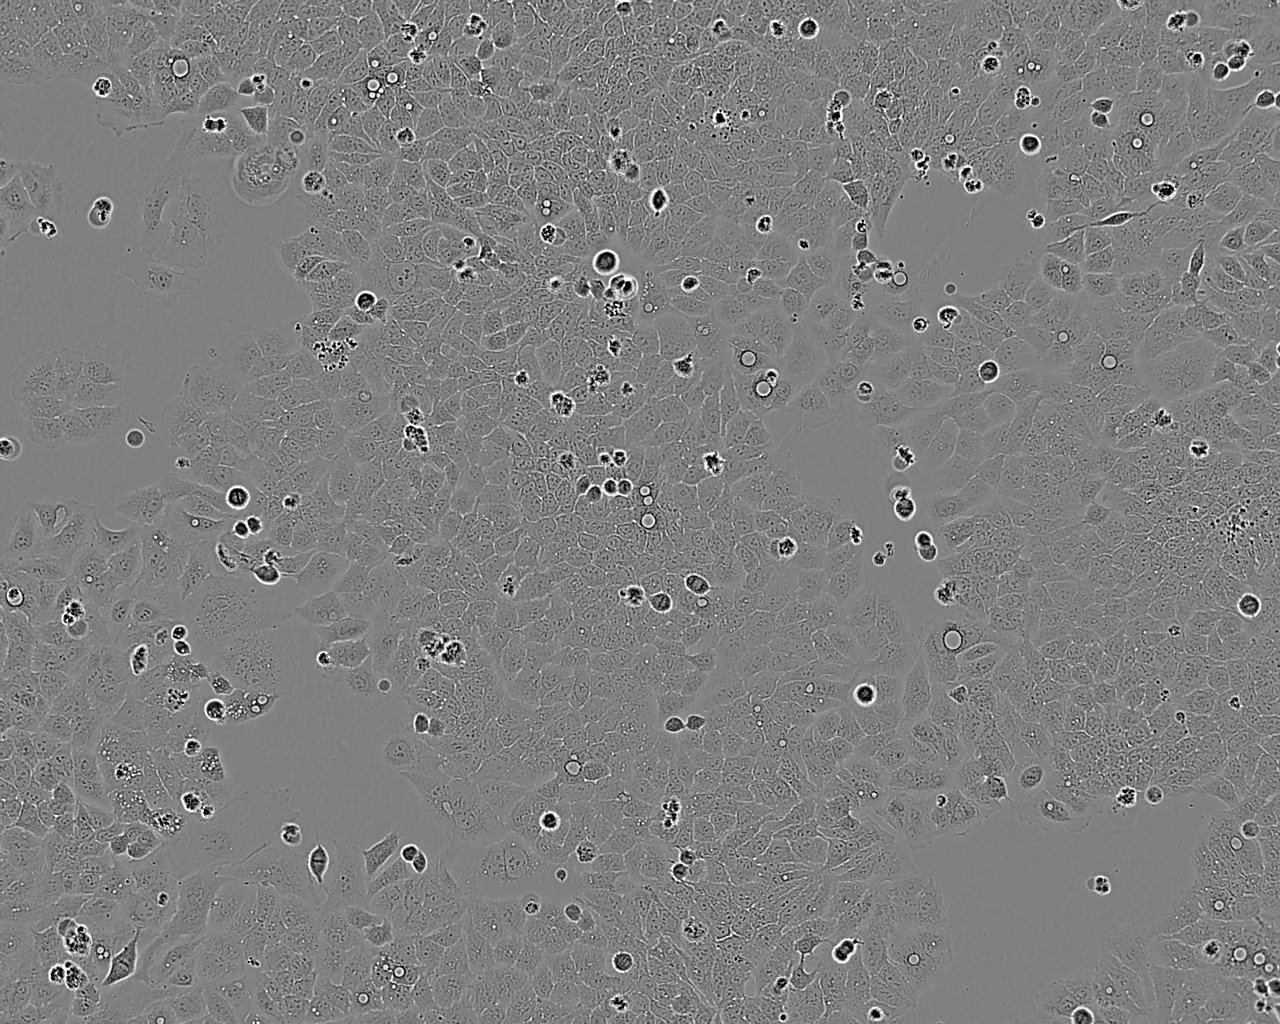 NCI-H2405 人非小细胞肺癌细胞系